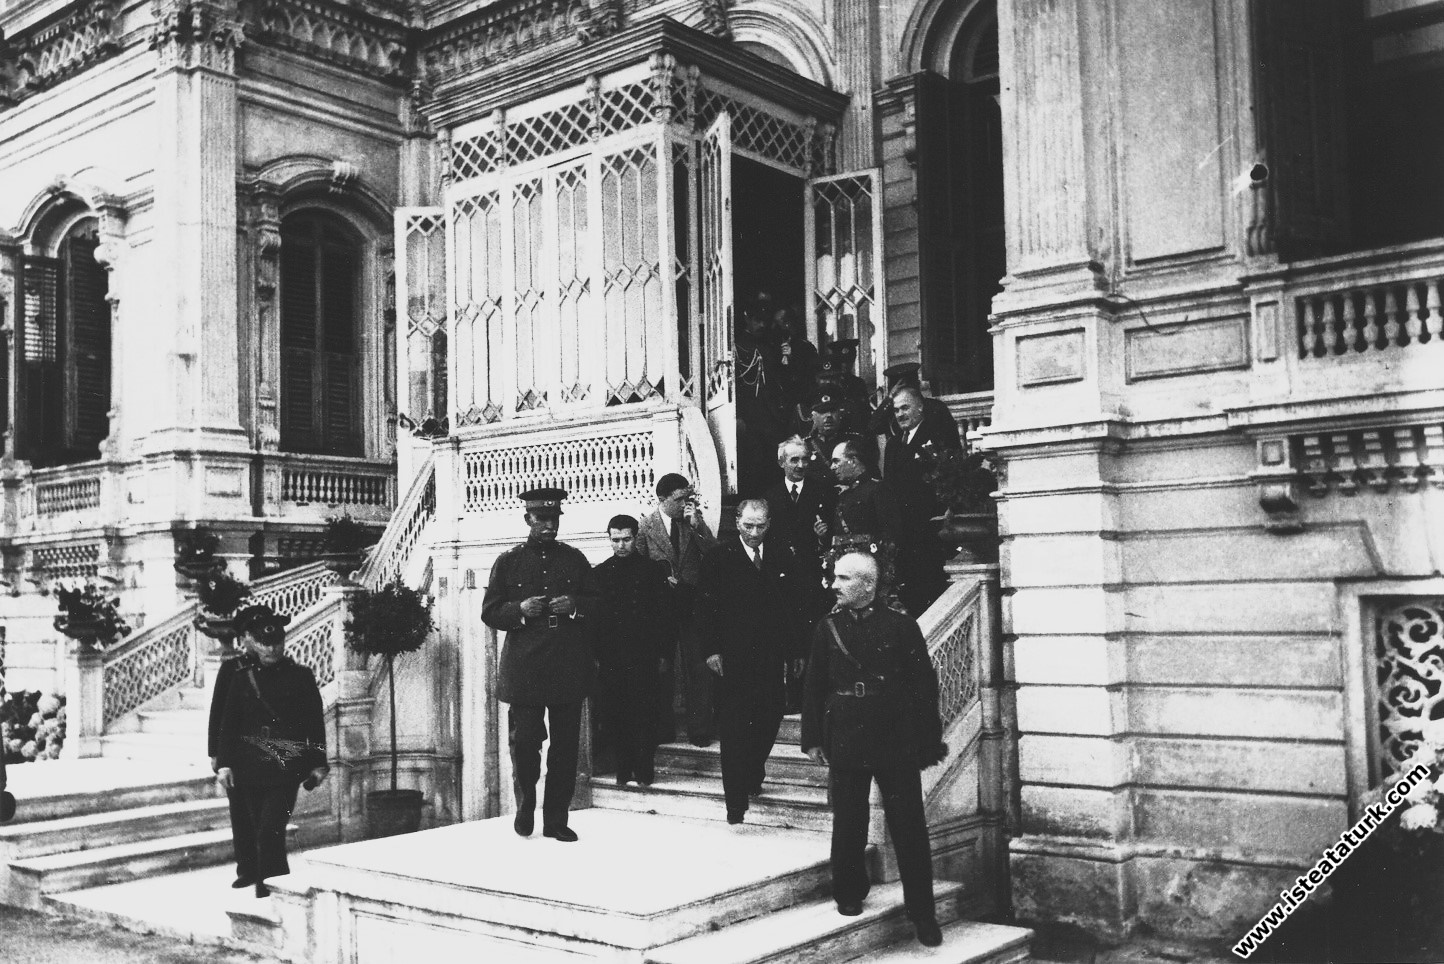 Mustafa Kemal Atatürk, İran Şahı ve İsmet İnönü İle birlikte Yıldız Sarayı'ndan çıkarken. (06.1934)